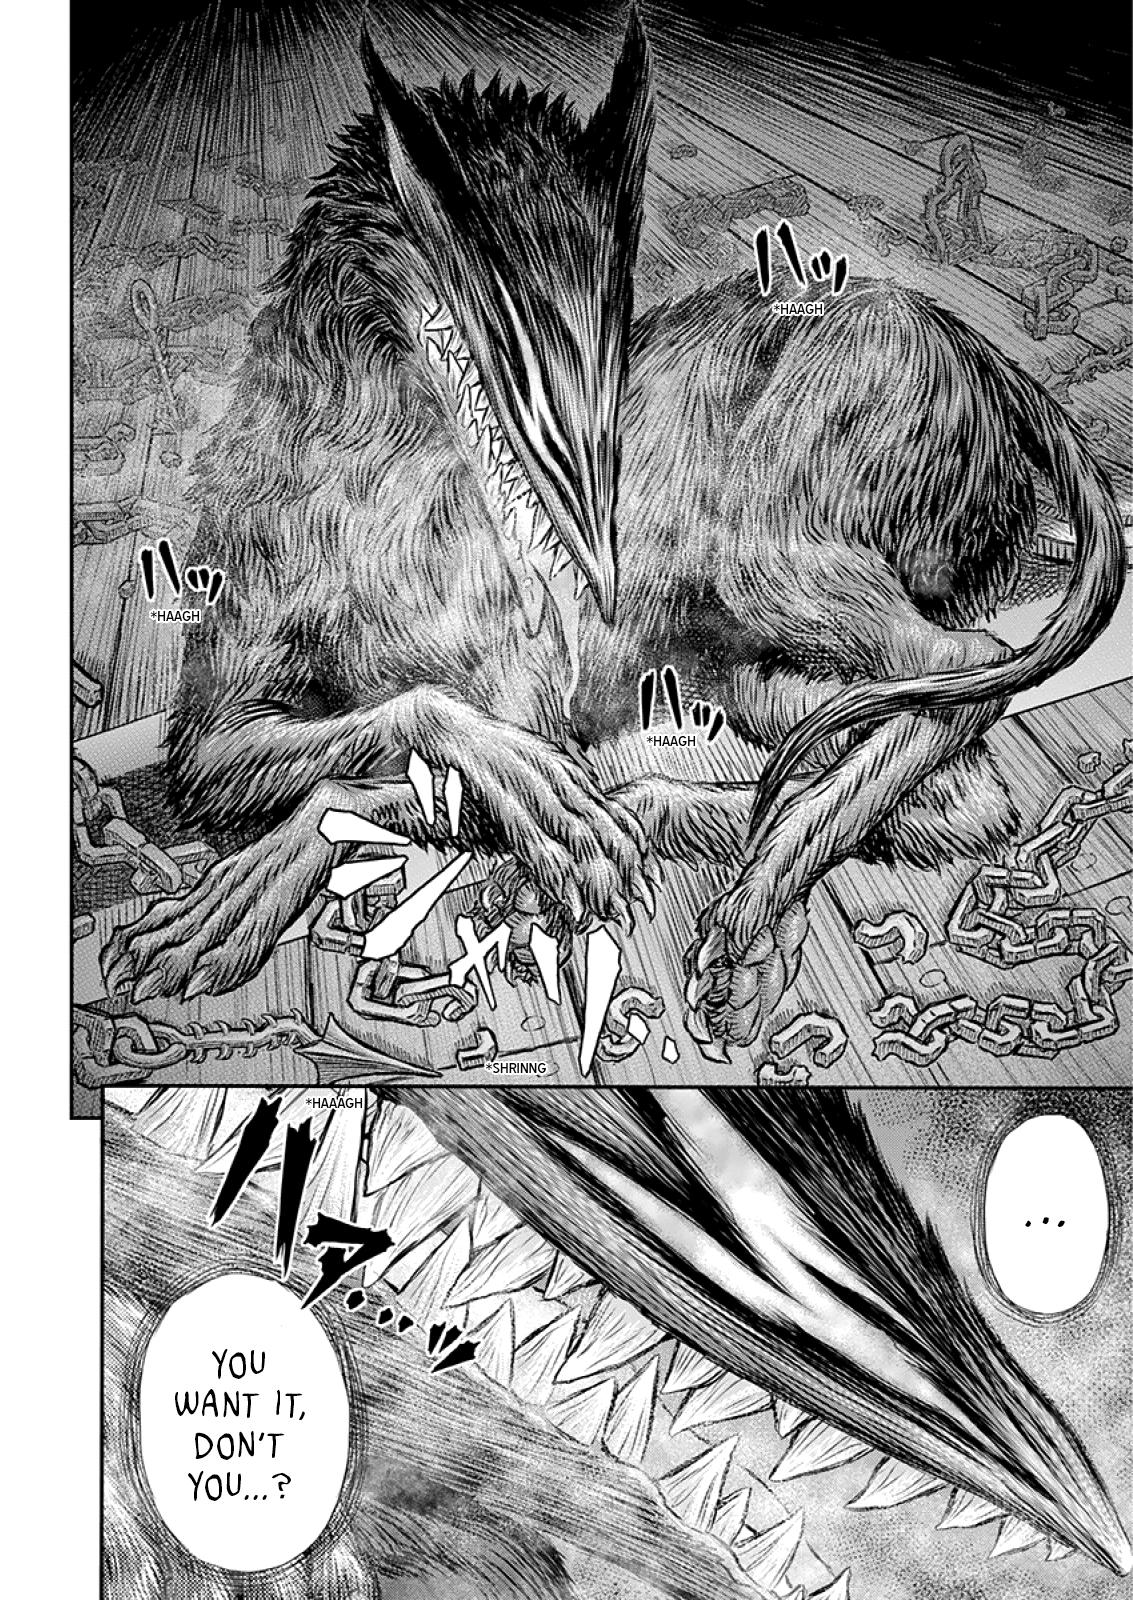 Berserk Manga Chapter 373 image 10